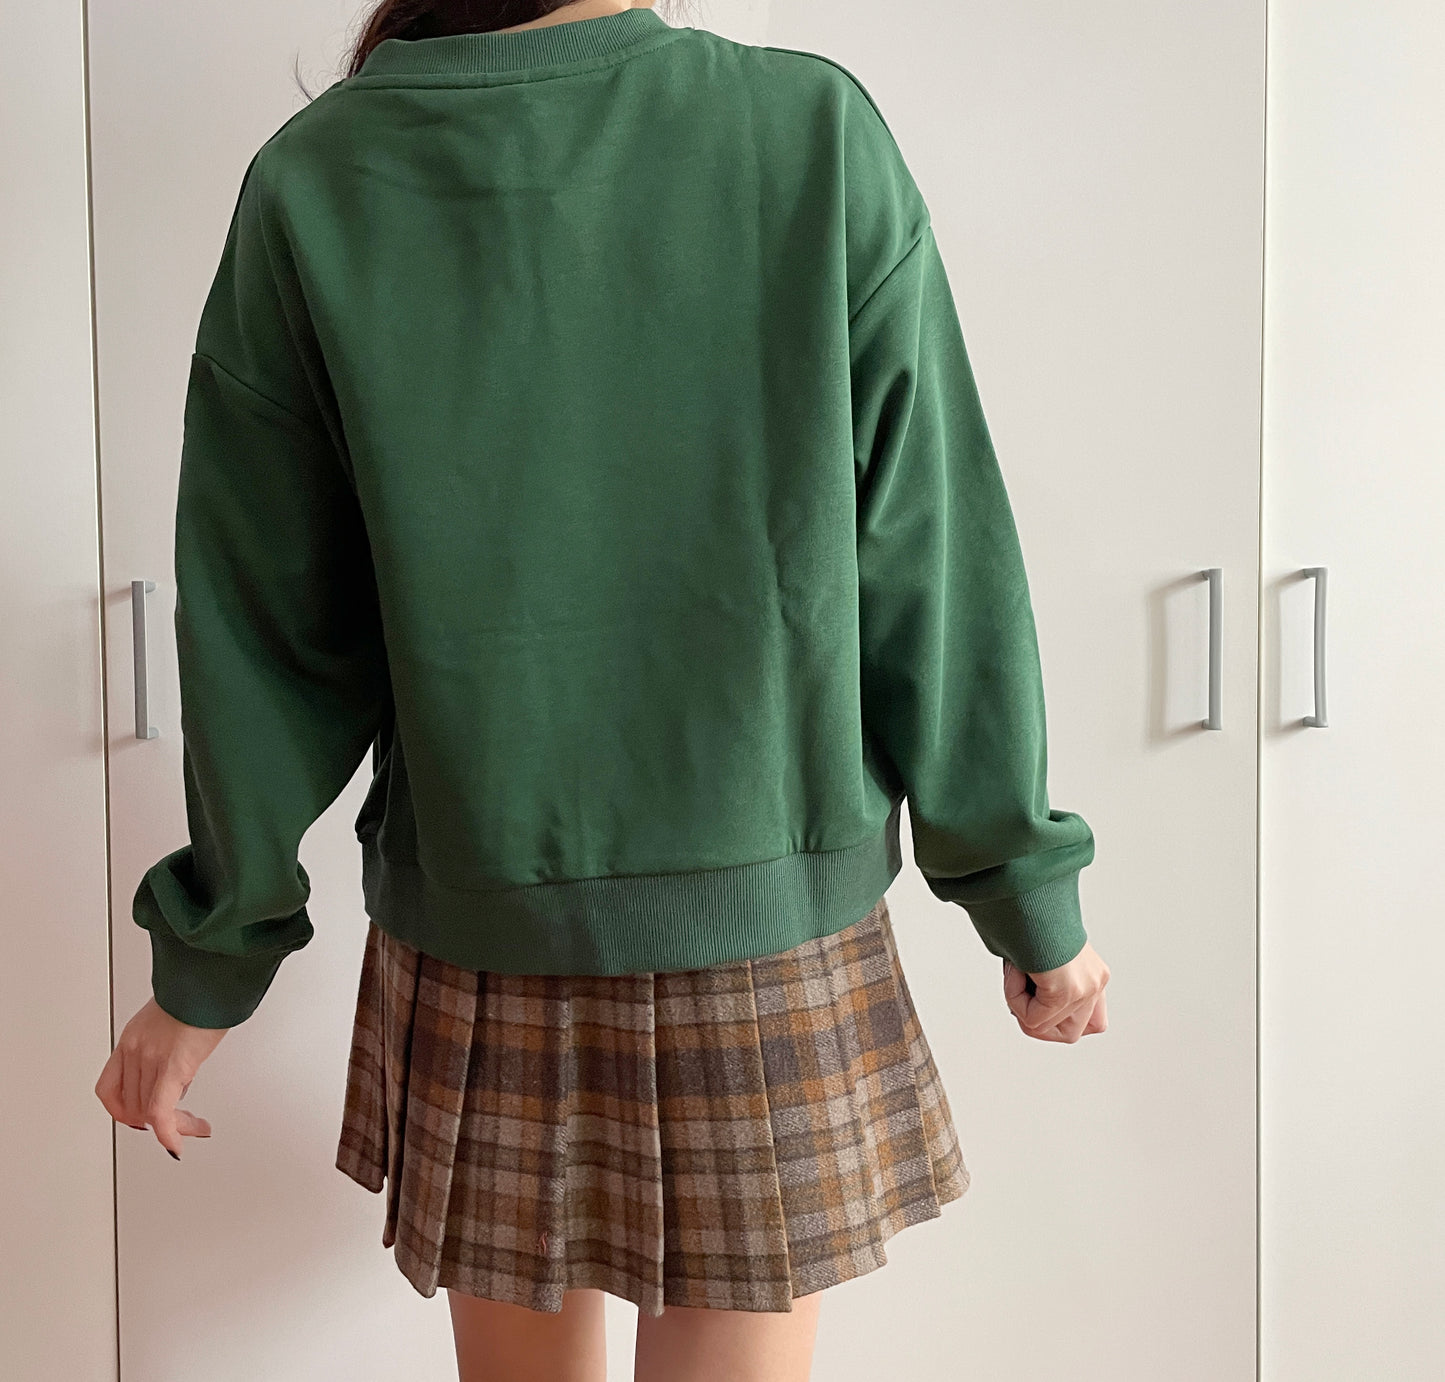 Study Hard Sweatshirt (Green)